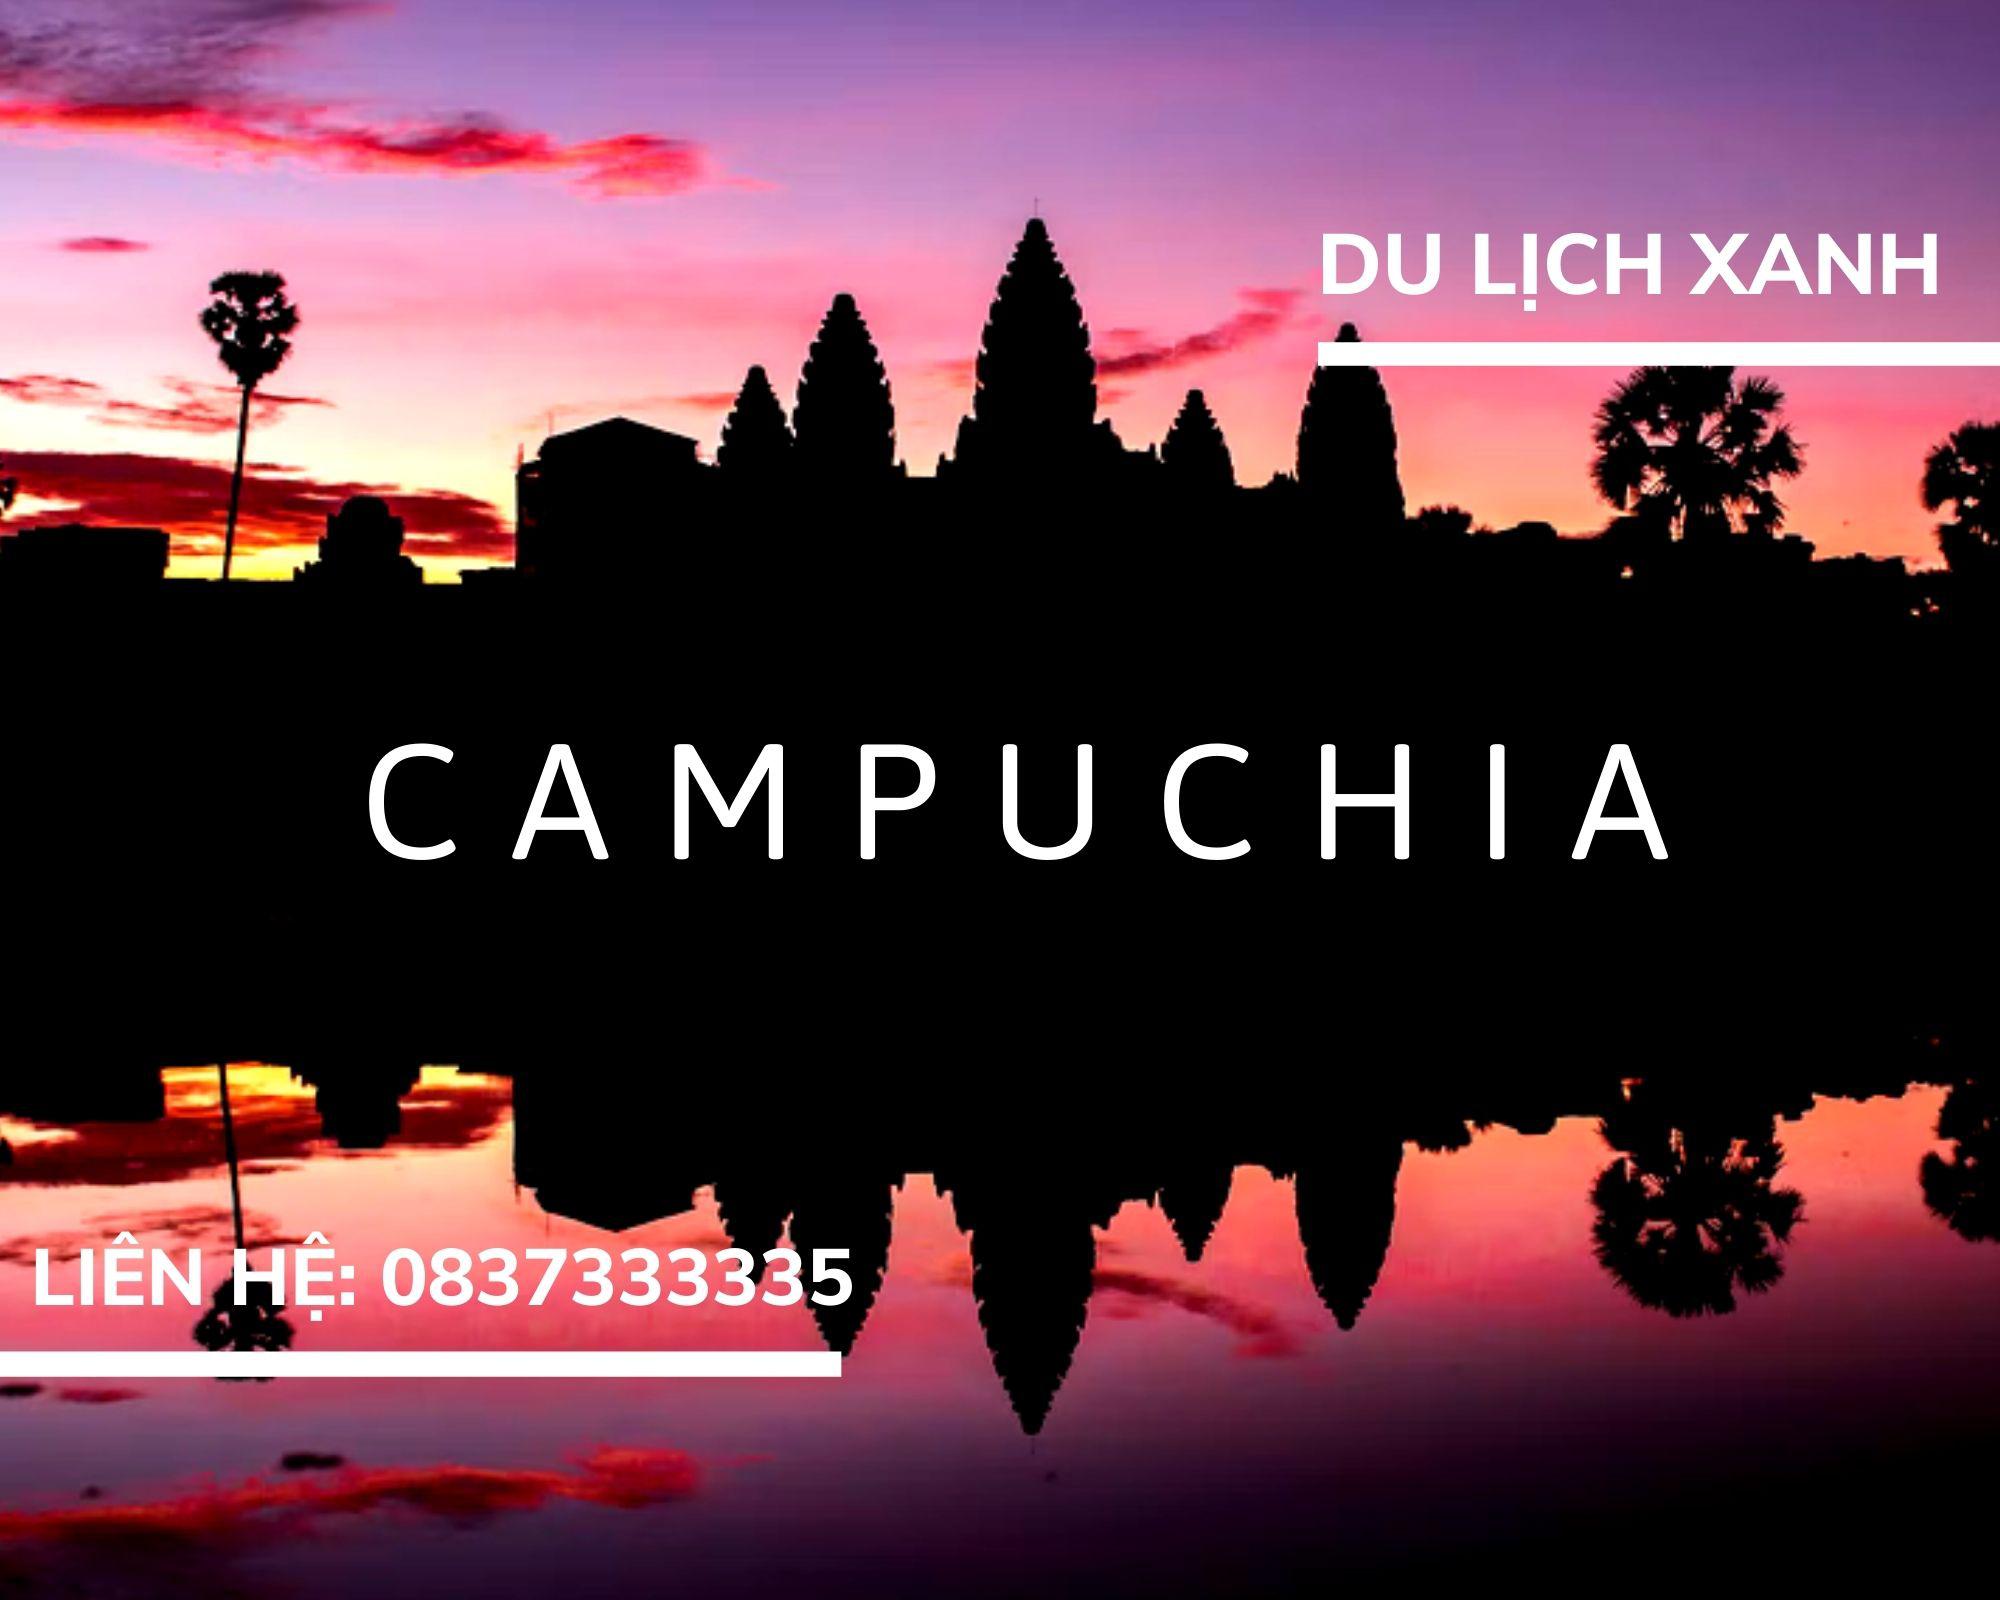 Tour du lịch Campuchia Siem Reap - Phnom Penh dịp Lễ 30/4